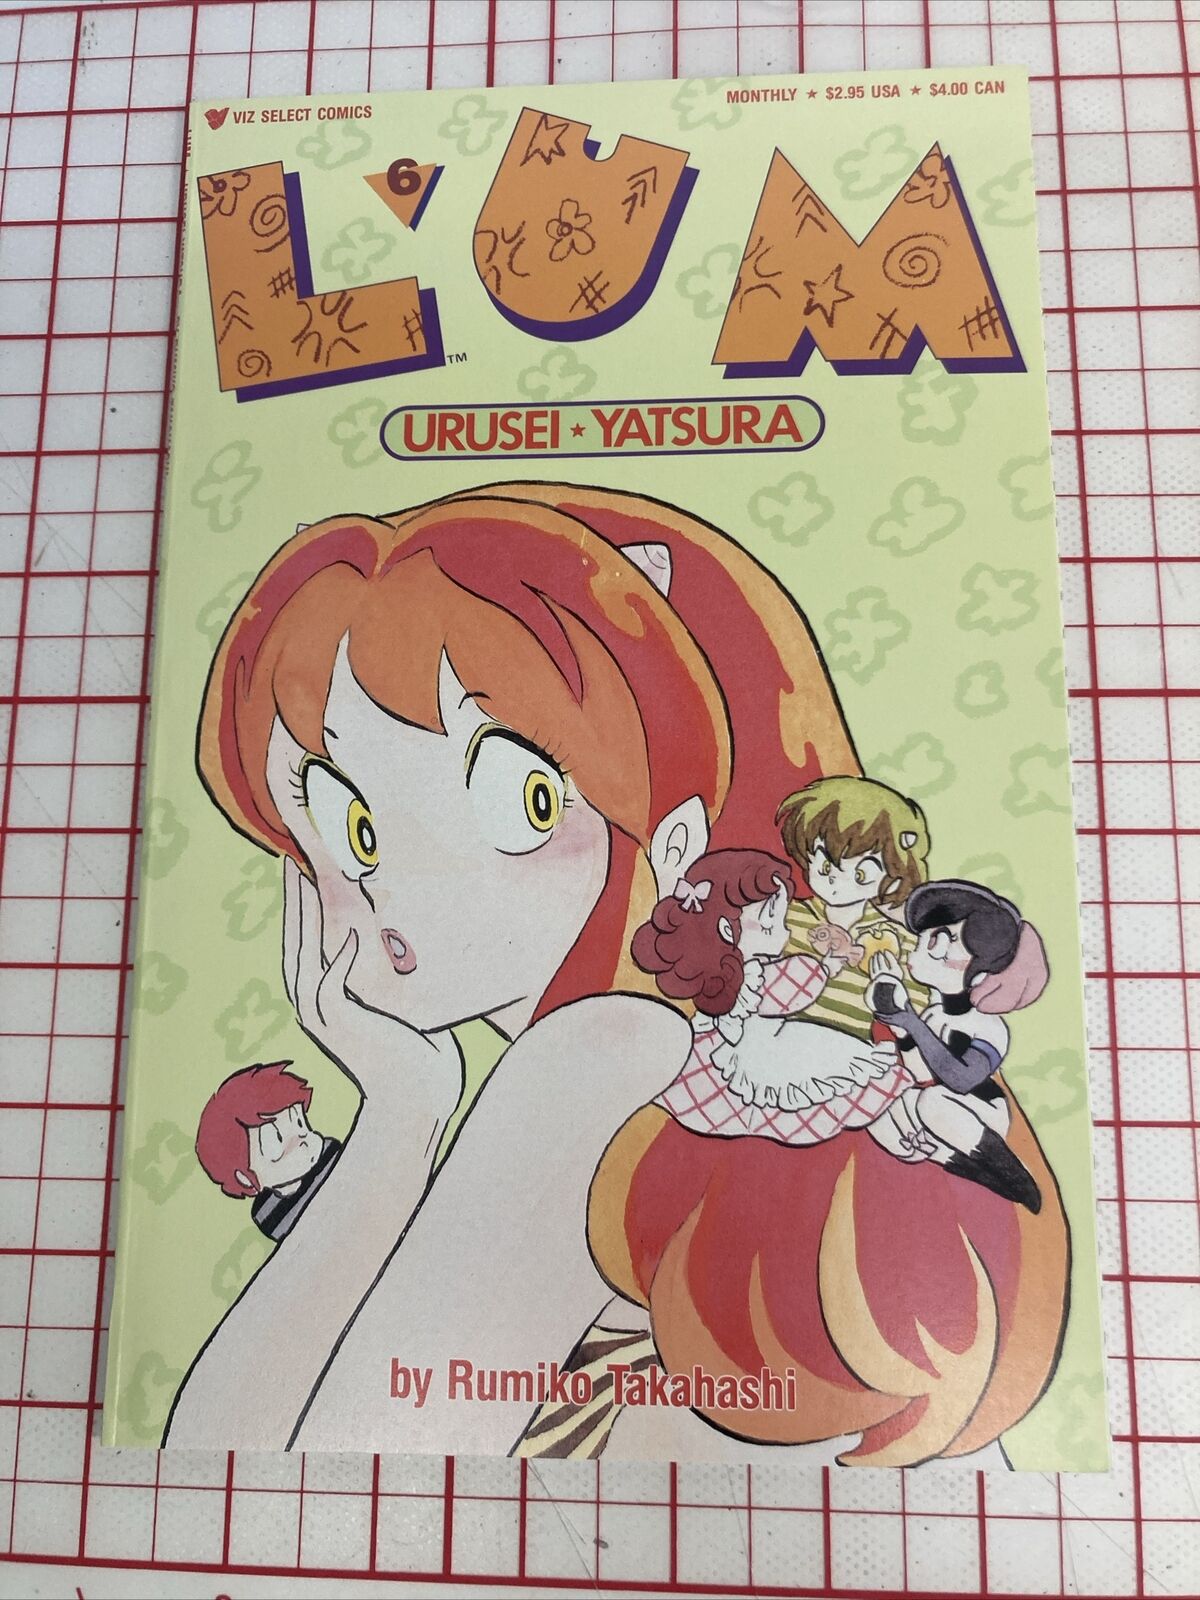 Lum #6, Urusei Yatsura, Rumiko Takahashi, Viz Select Comics 1989 VF-NM